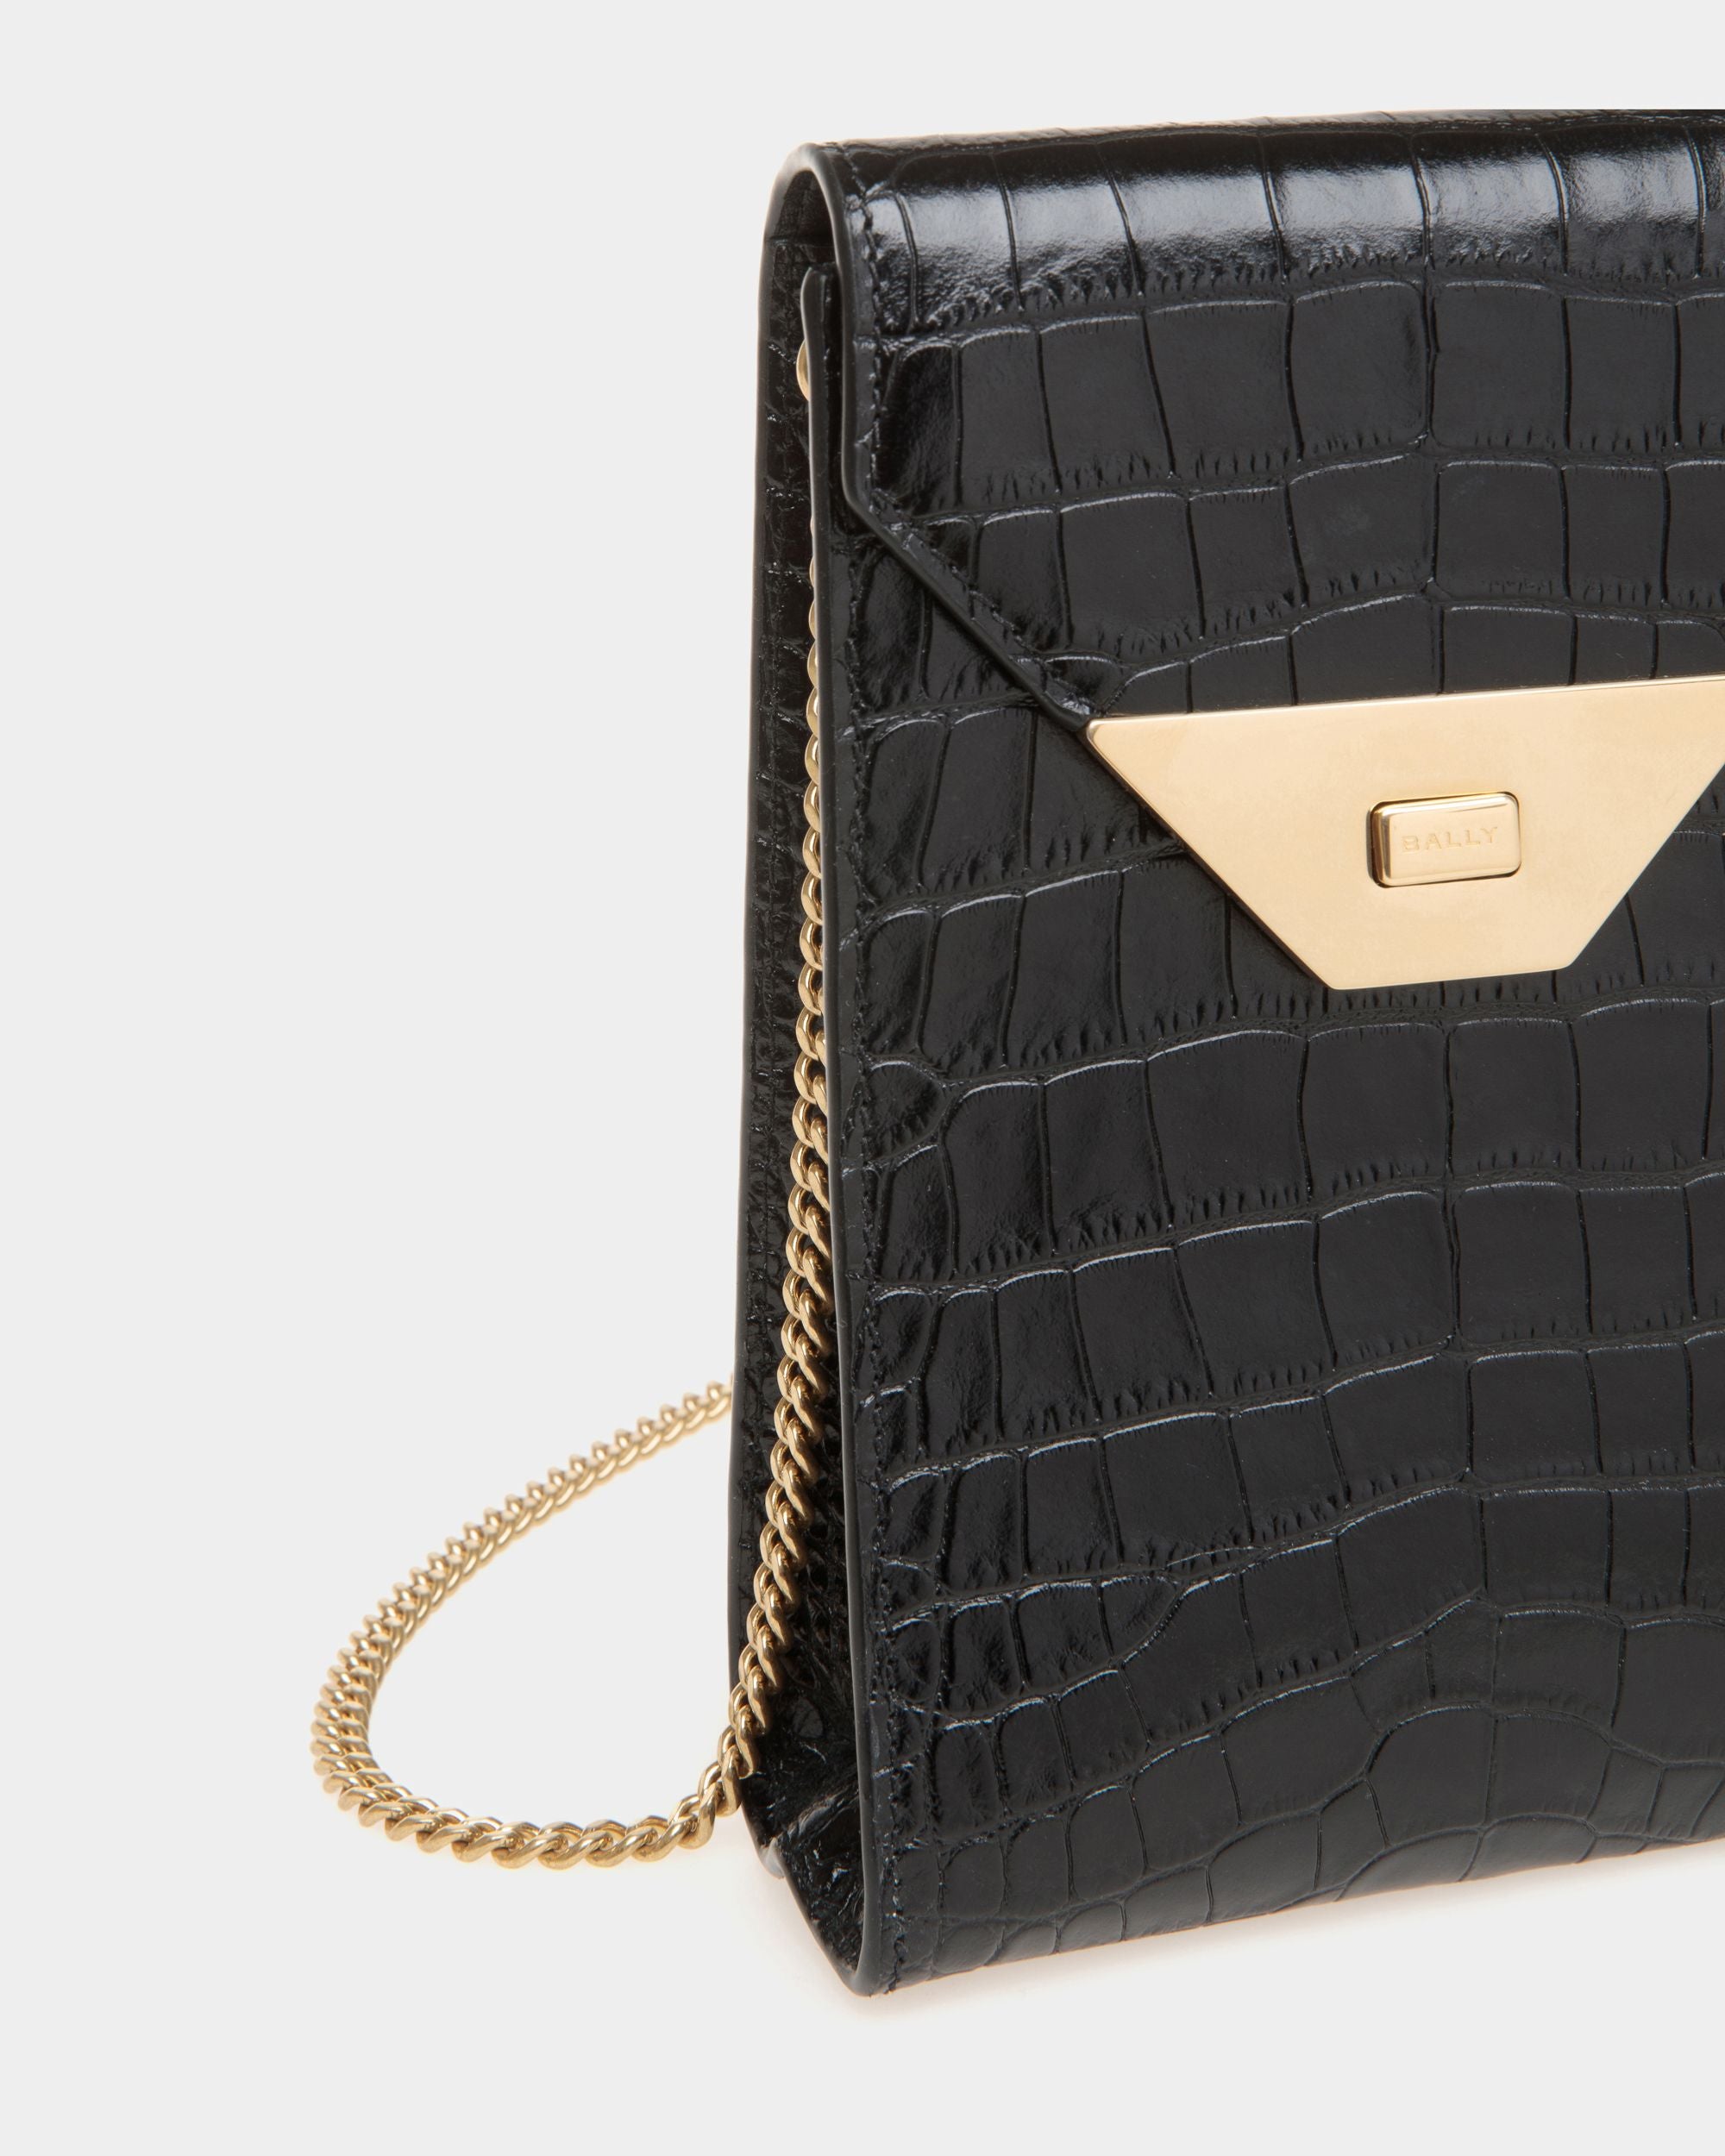 Tilt | Women's Phone Bag in Black Crocodile Print Leather | Bally | Still Life Detail